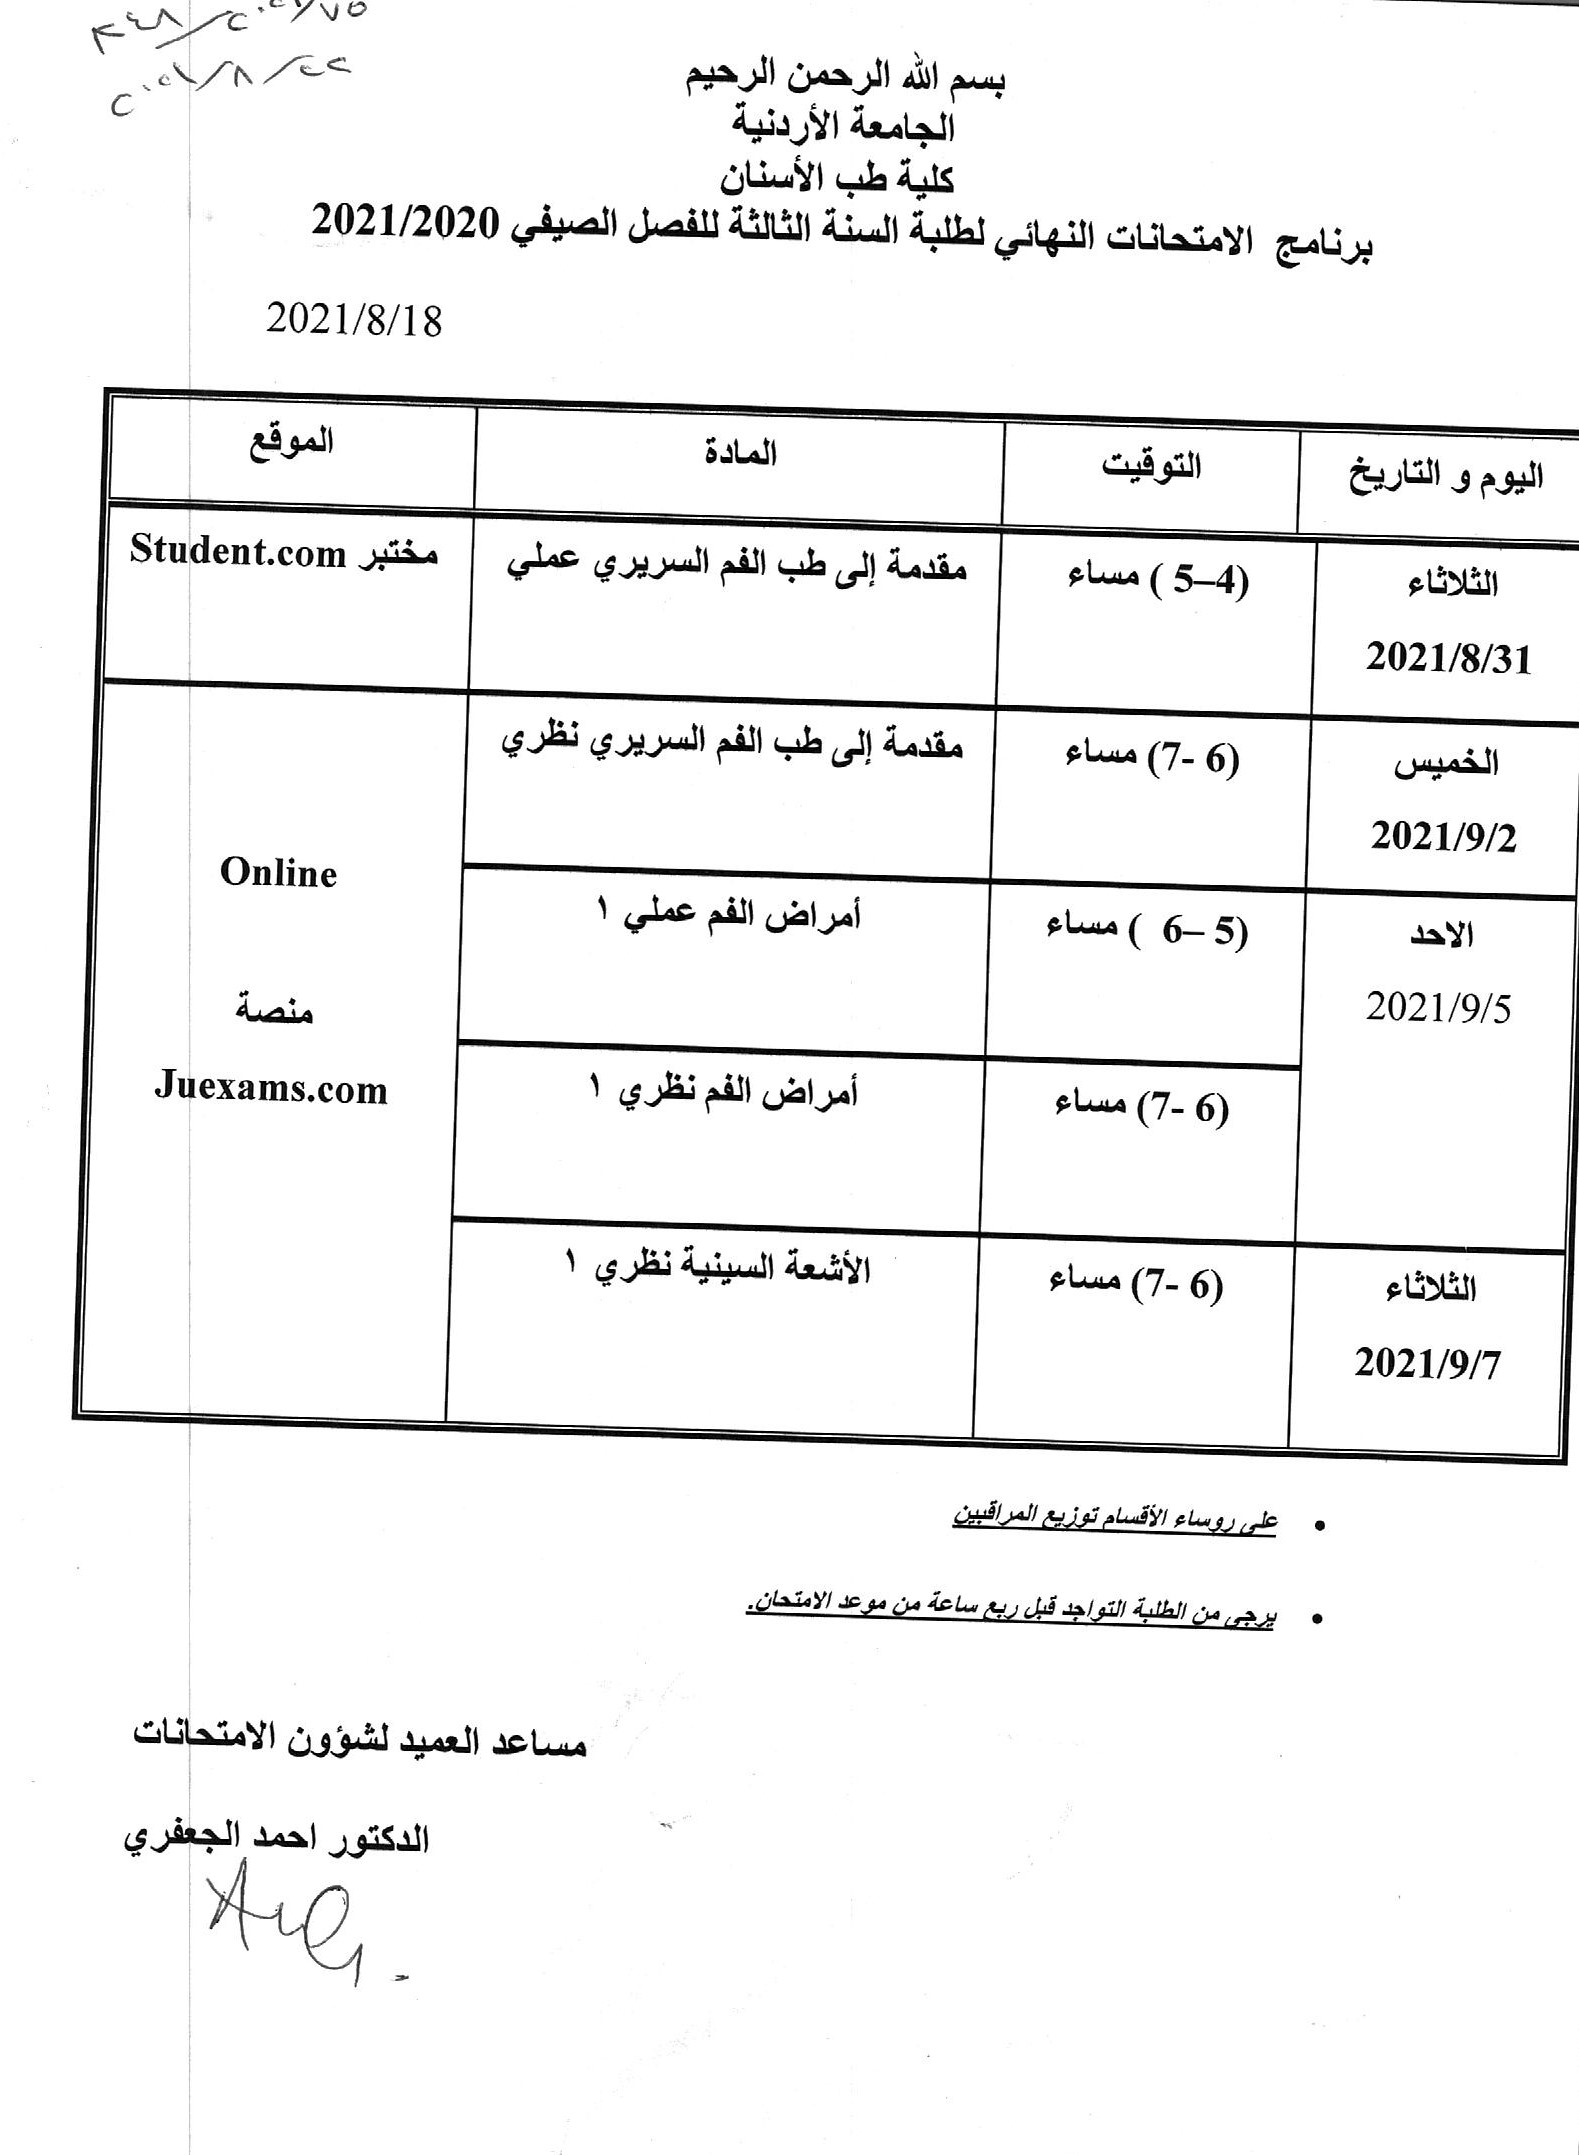 جدول الامتحانات النهائي الفصل الصيفي 2021.jpg